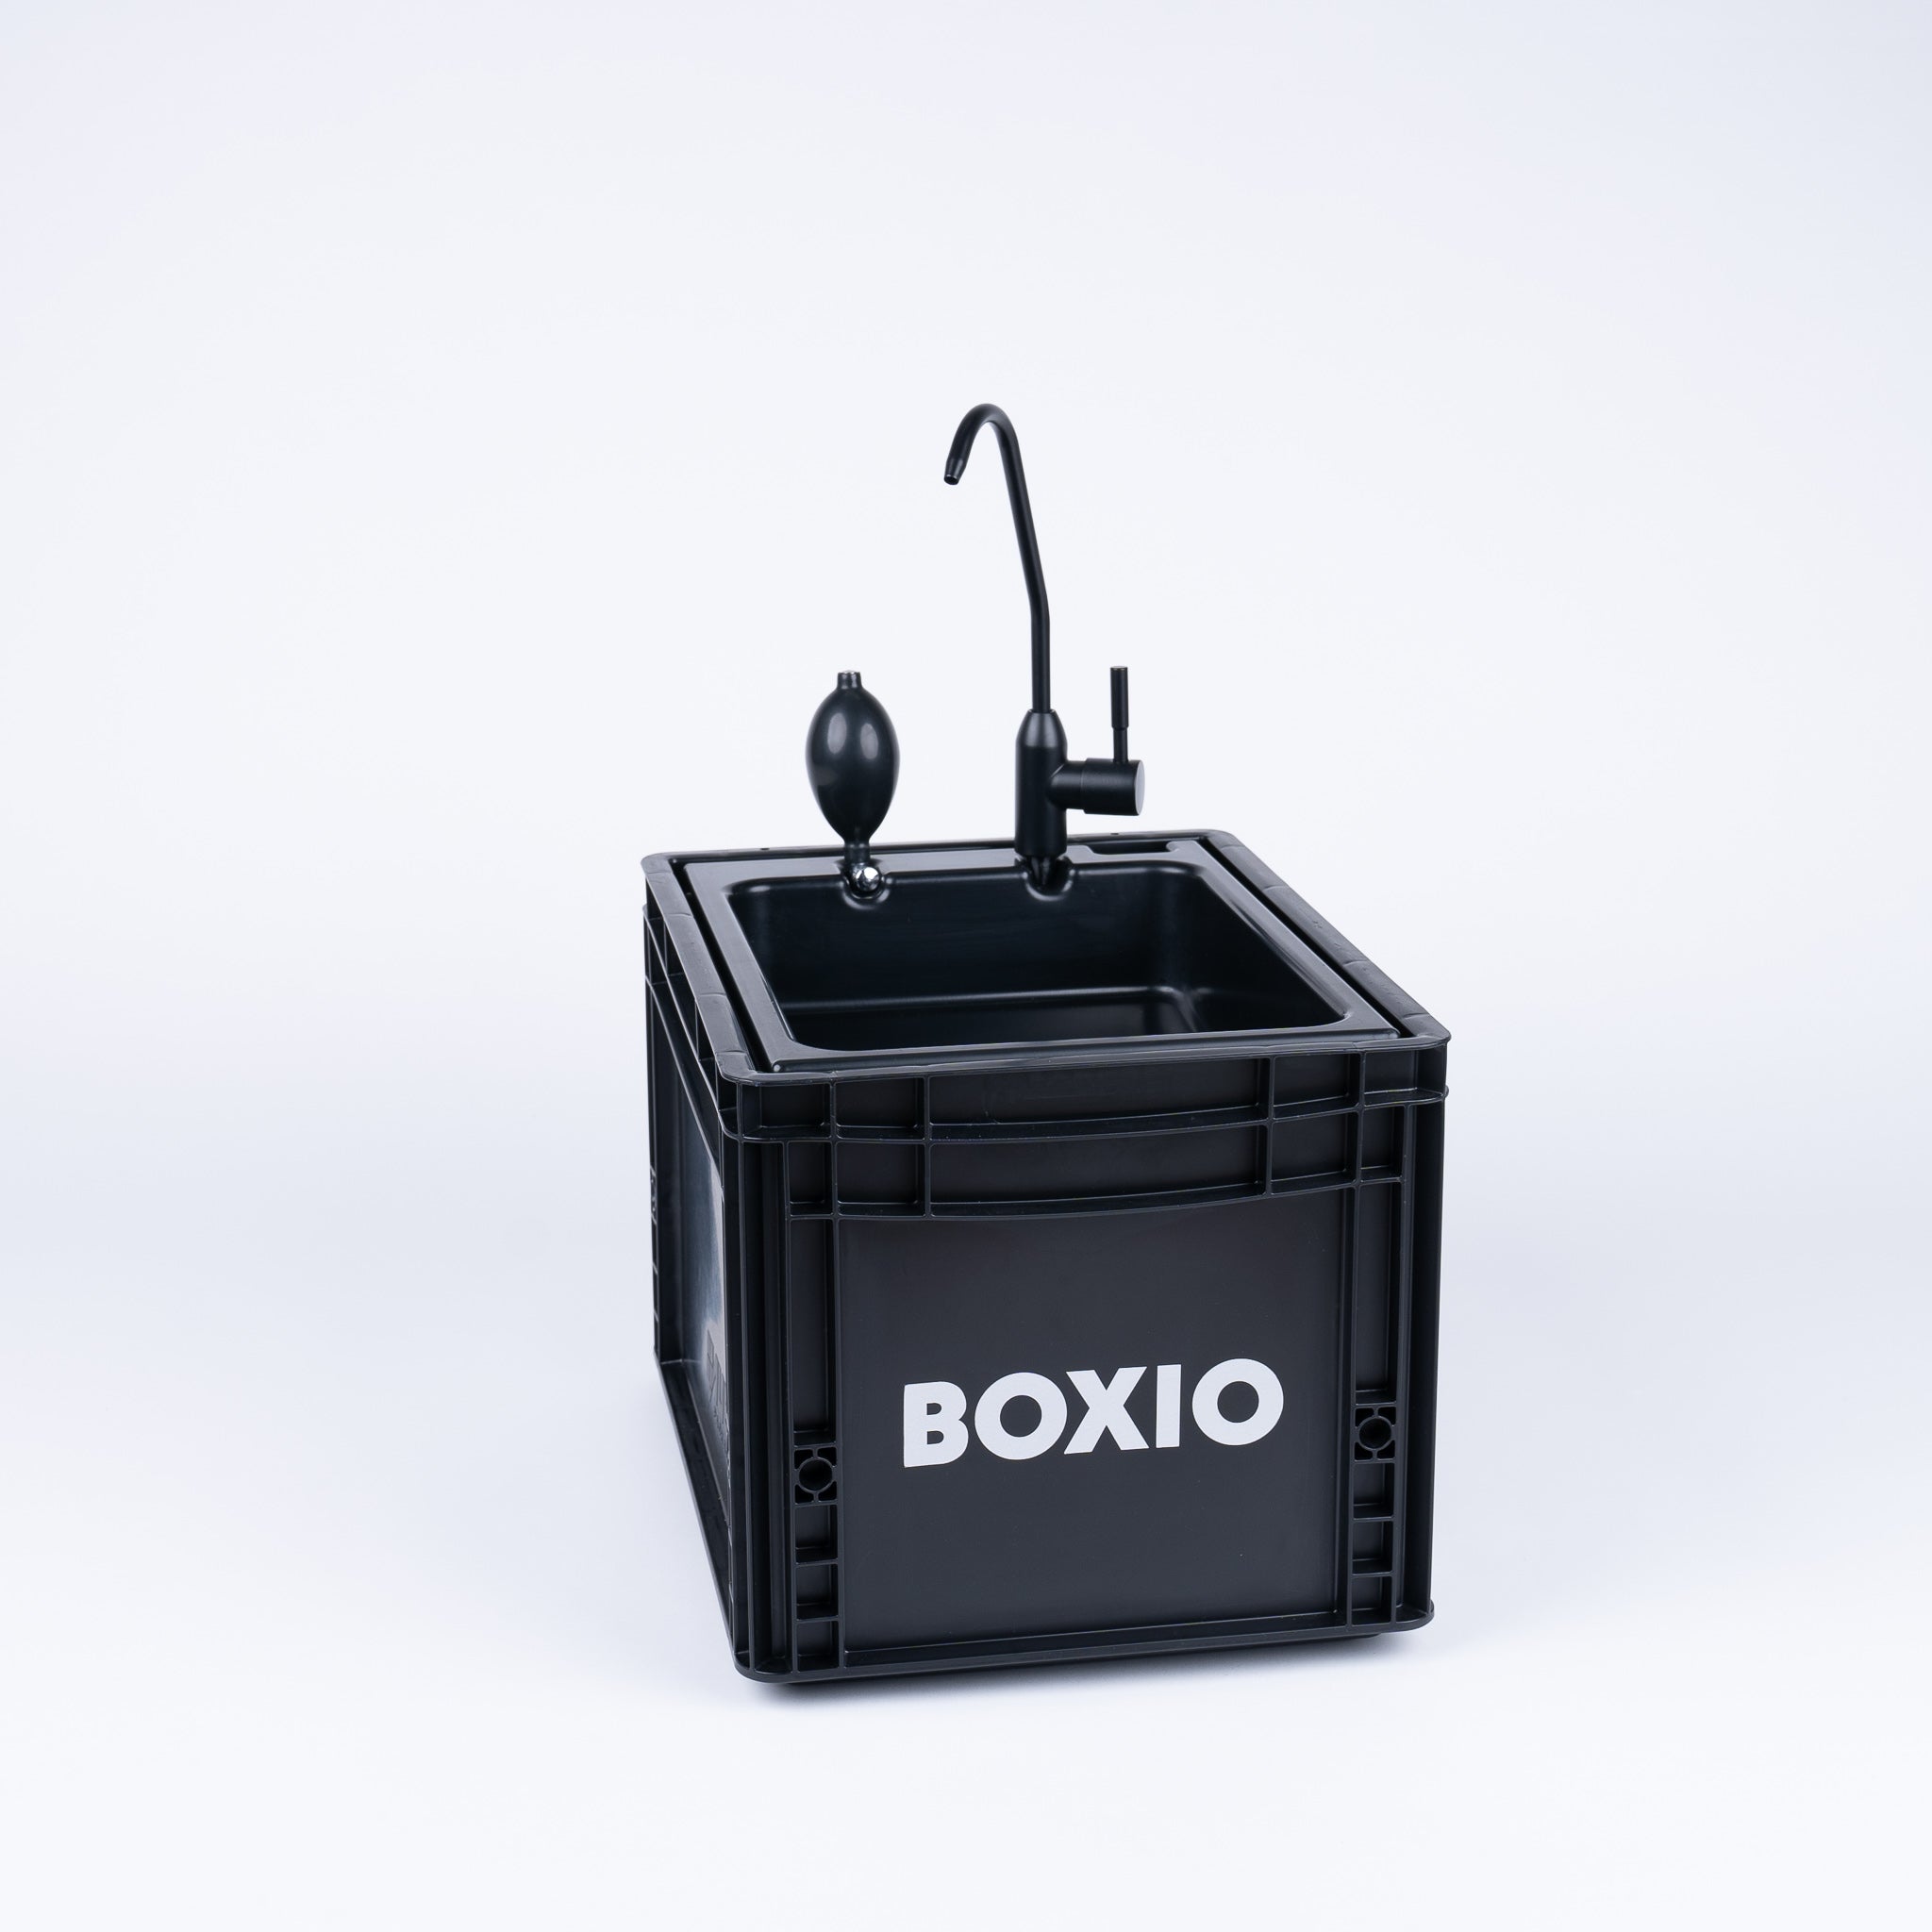 BOXIO - SANITARIO: Juego completo con inodoro desviador de orina, lavabo móvil y accesorios